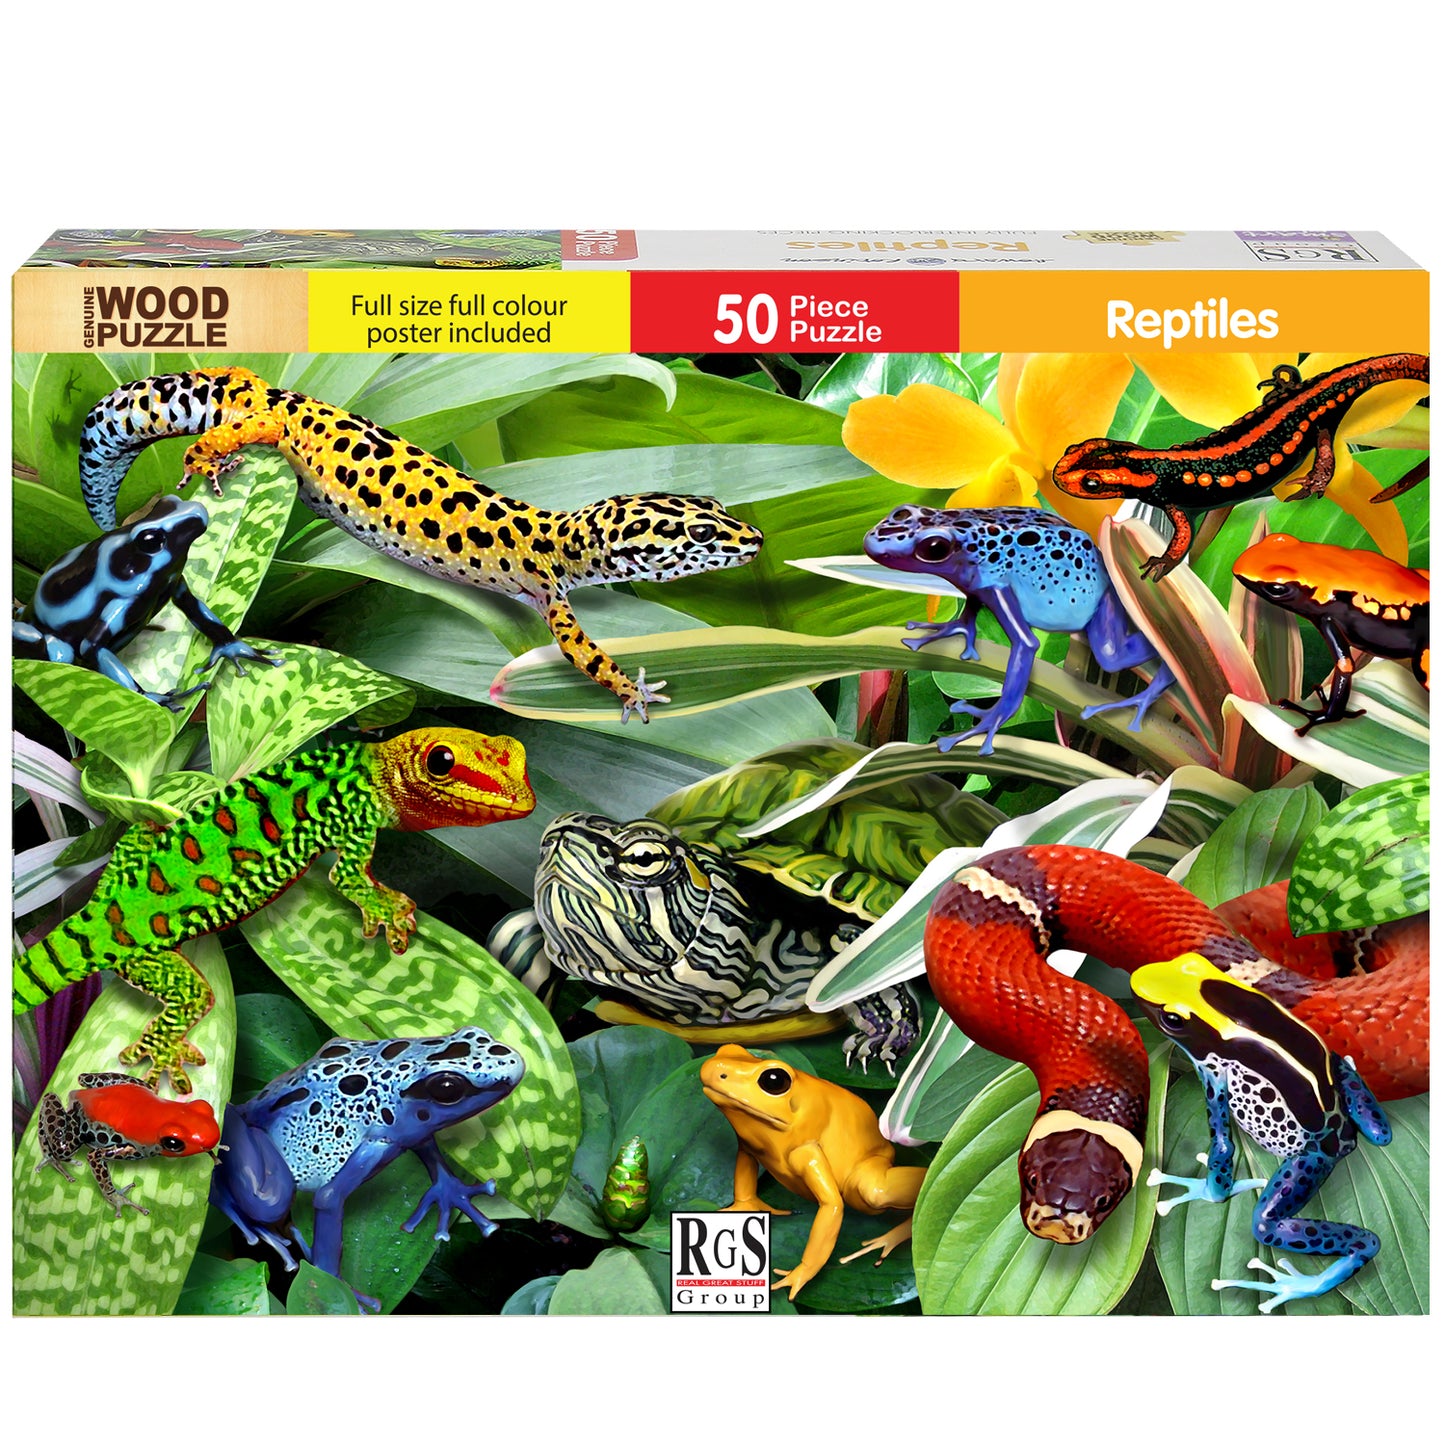 Puzzle: Reptiles 50pc